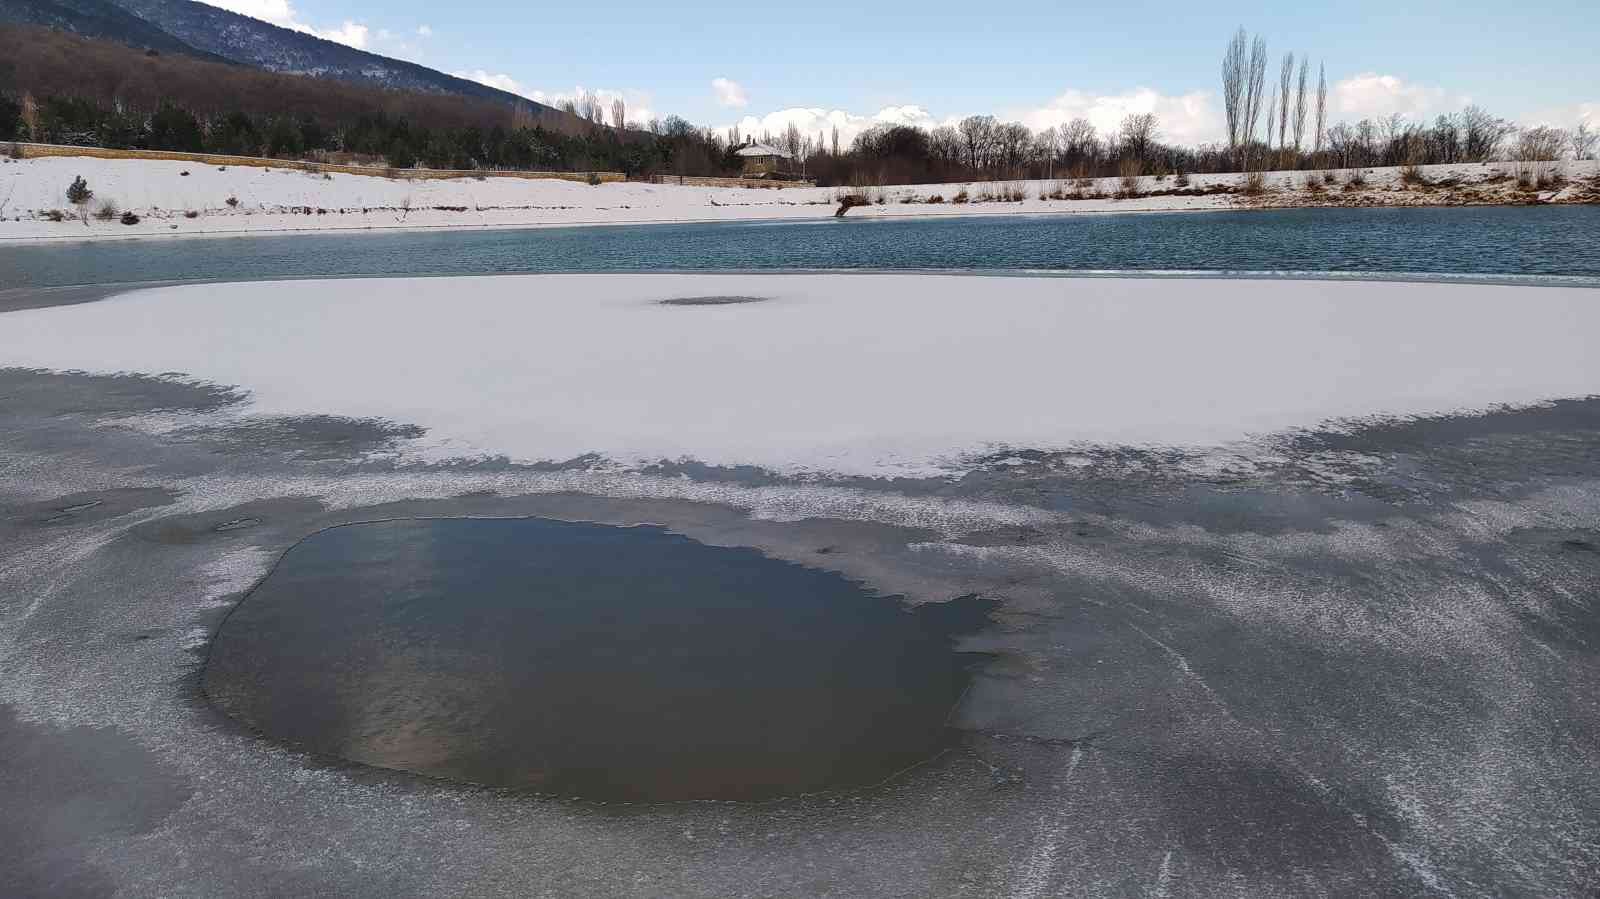 (ÖZEL) Kütahya’daki Demirciören Göleti buz tuttu #kutahya